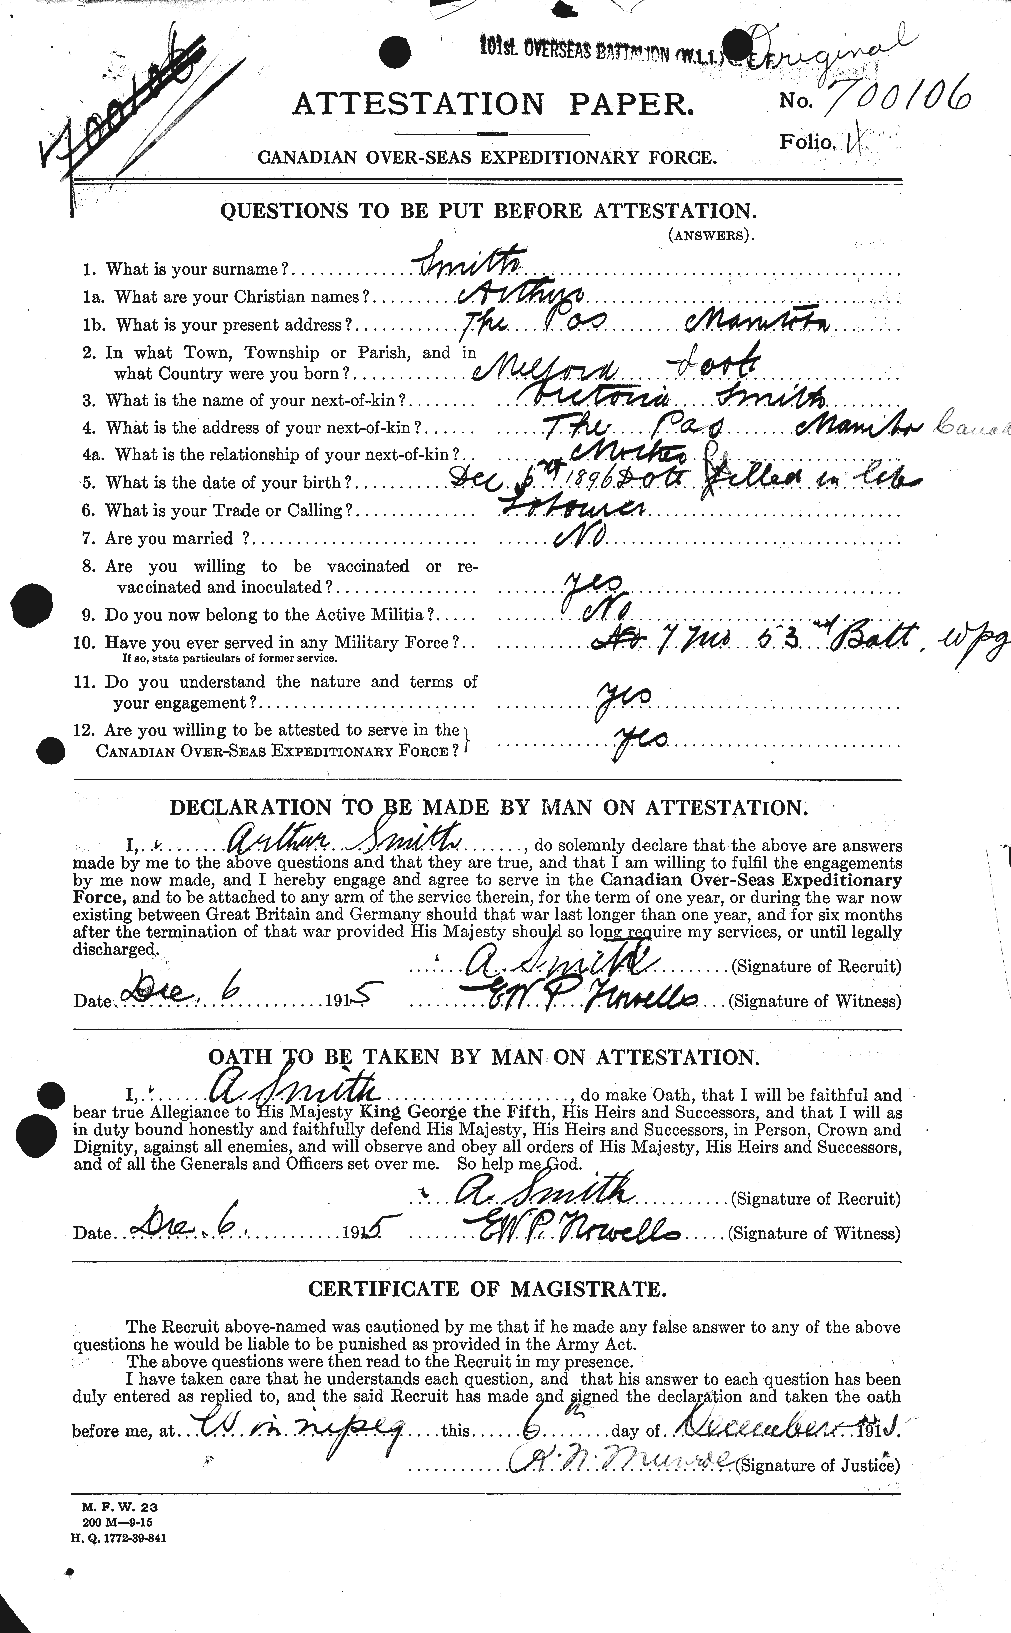 Dossiers du Personnel de la Première Guerre mondiale - CEC 101999a